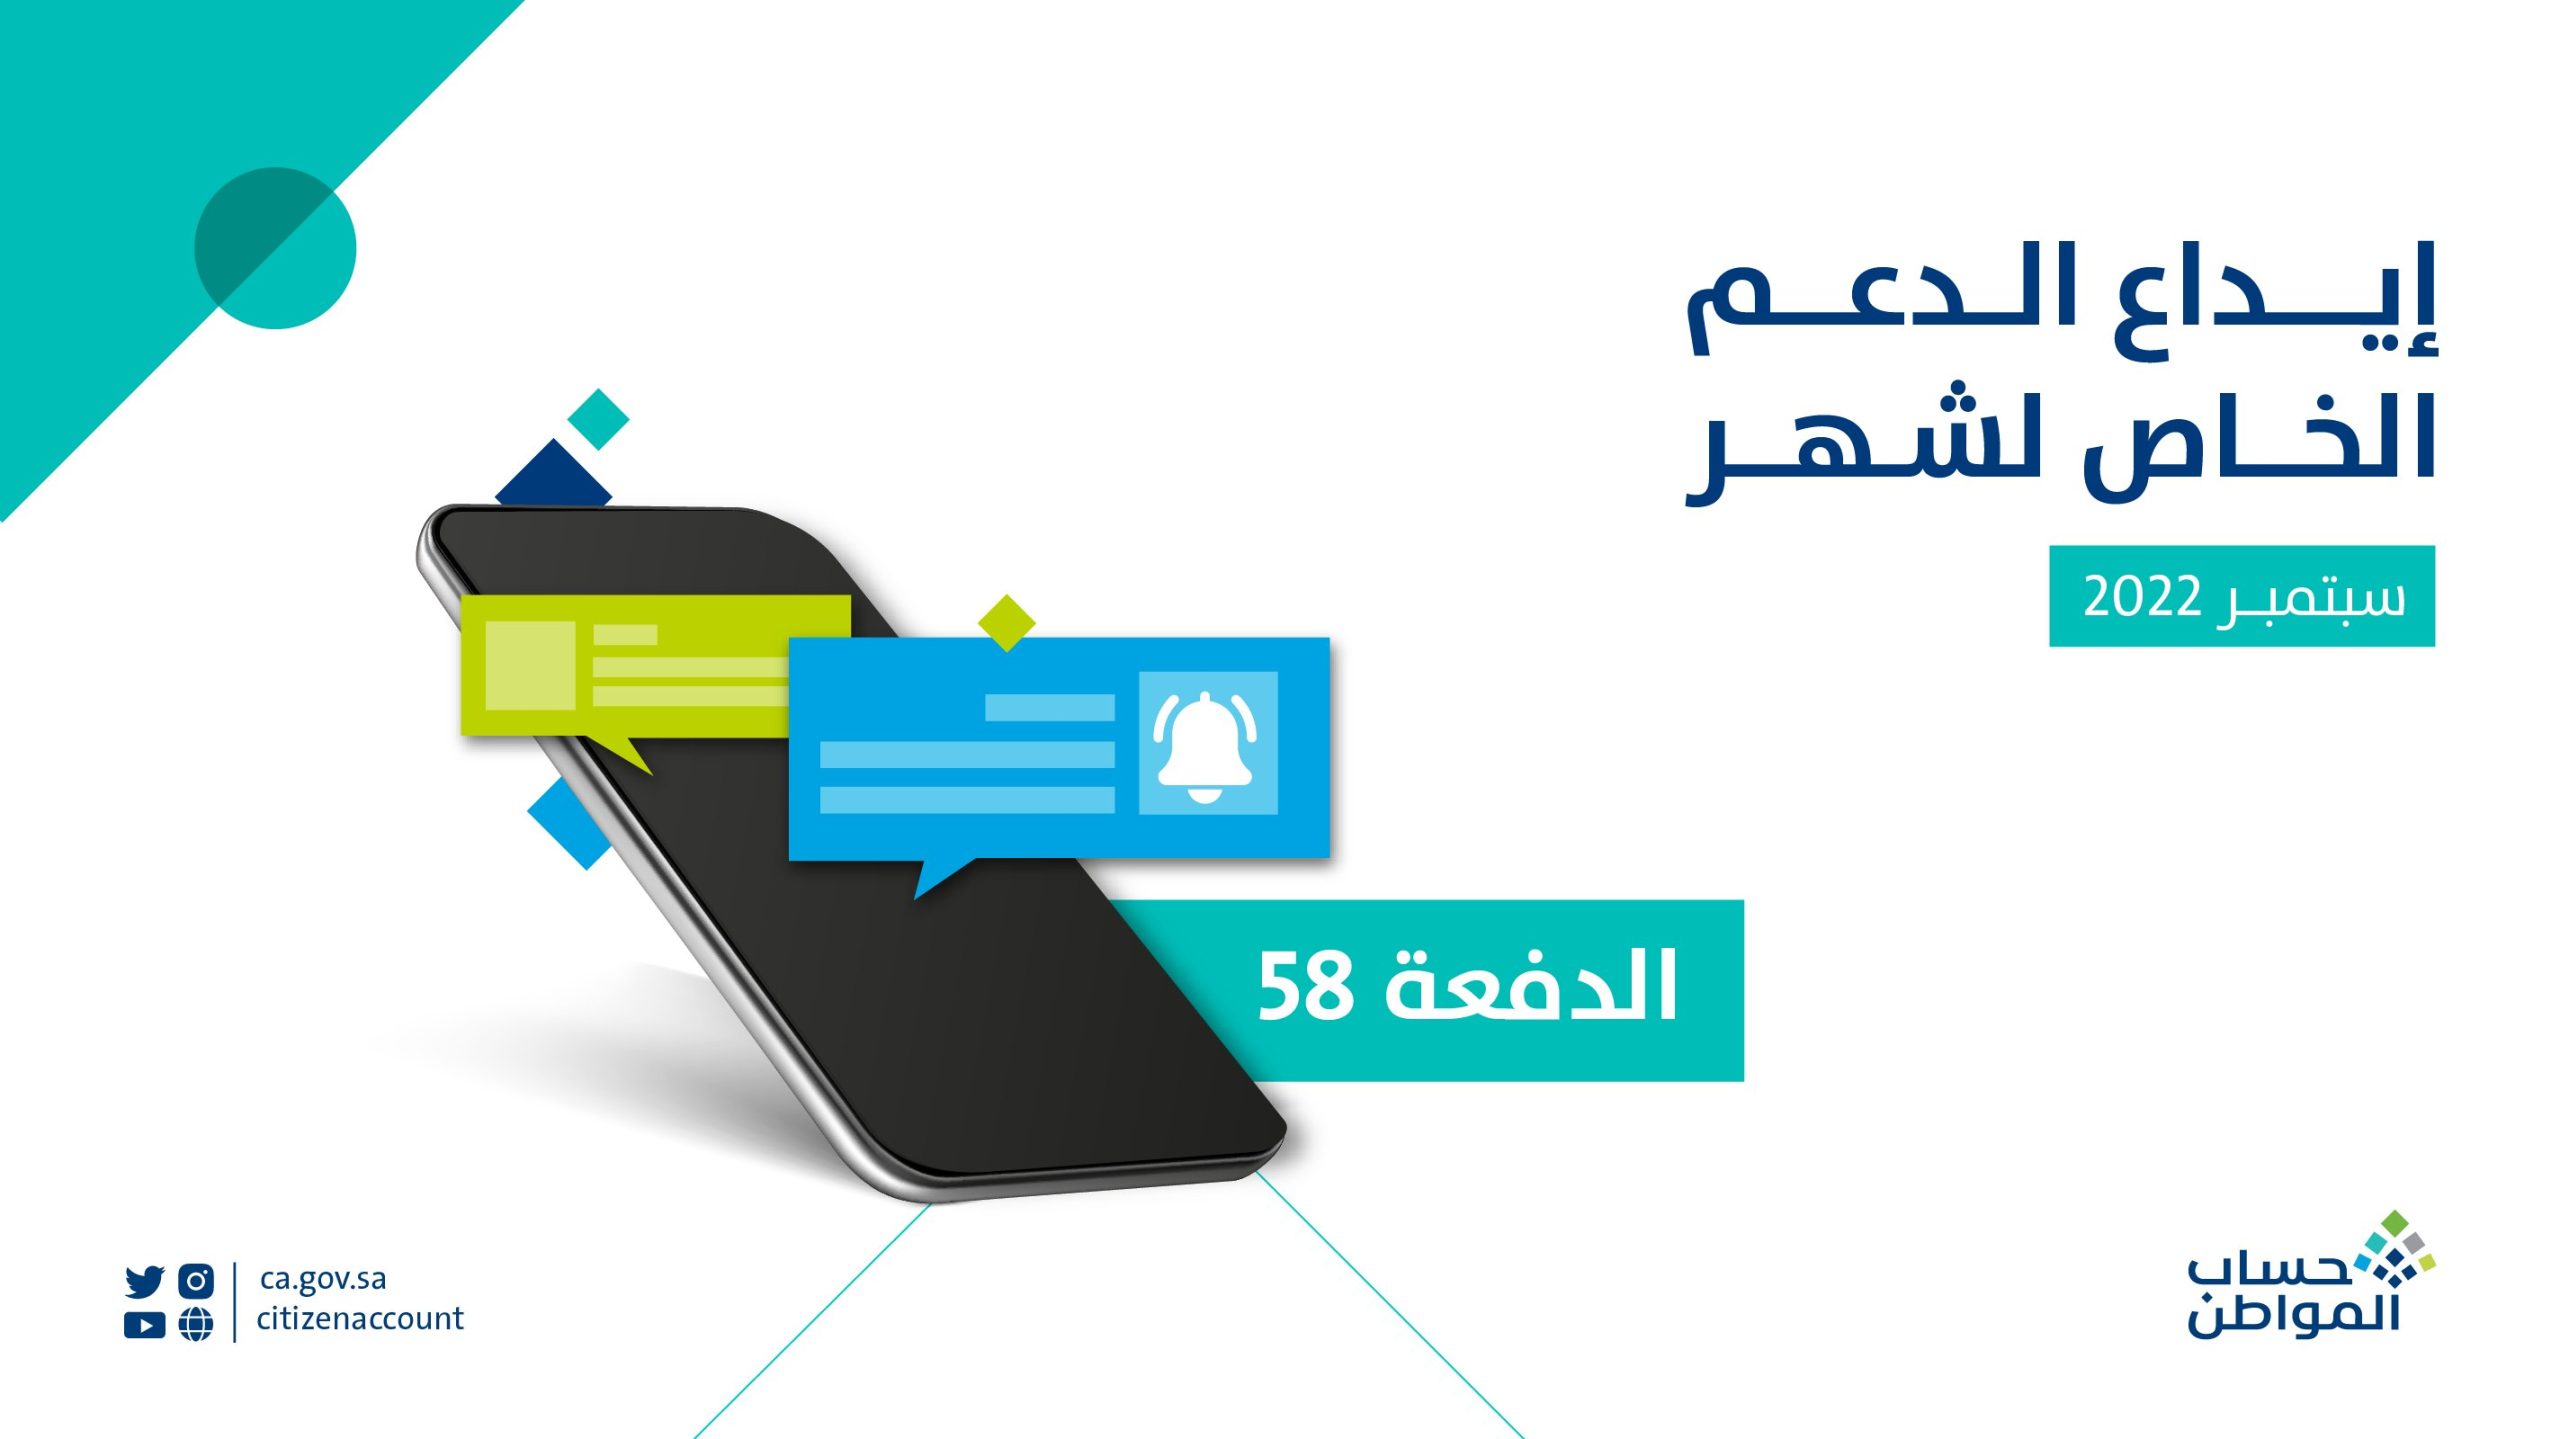 رقم حساب المواطن السعودي وتفاصيل الدفعة الجديدة من البرنامج